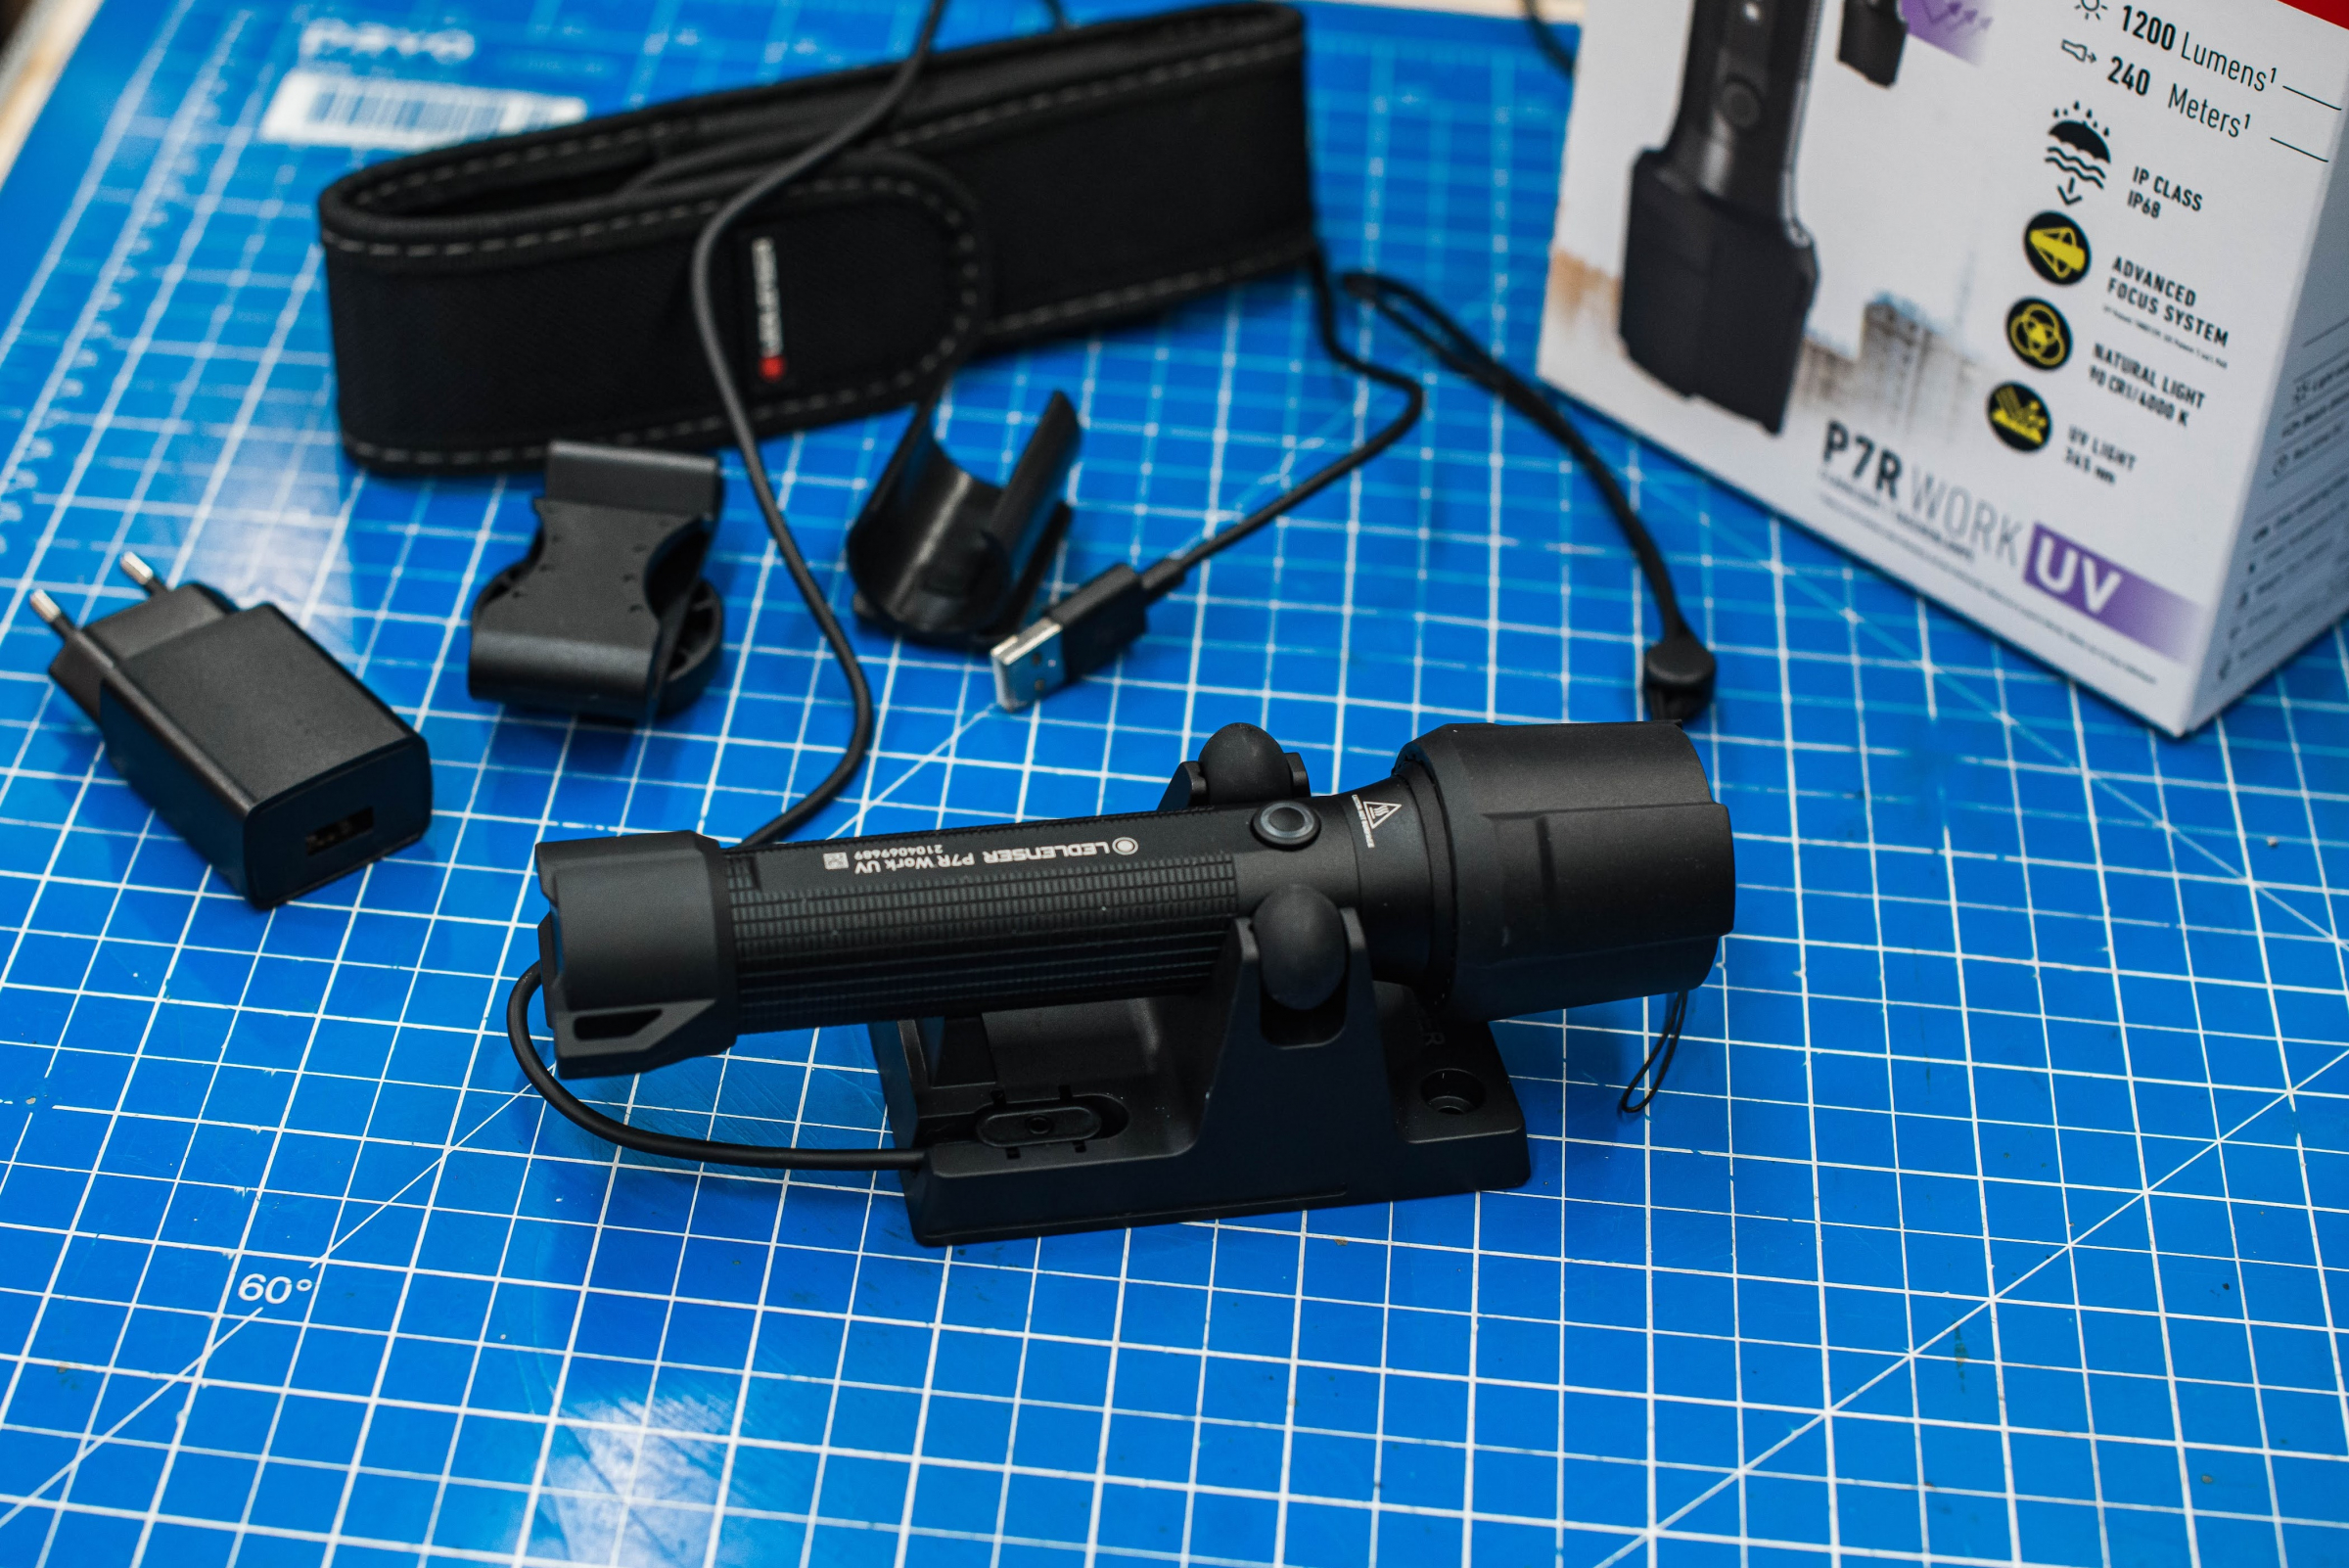 Led Lenser Flashlight P7R Work UV - 1200 Lumens